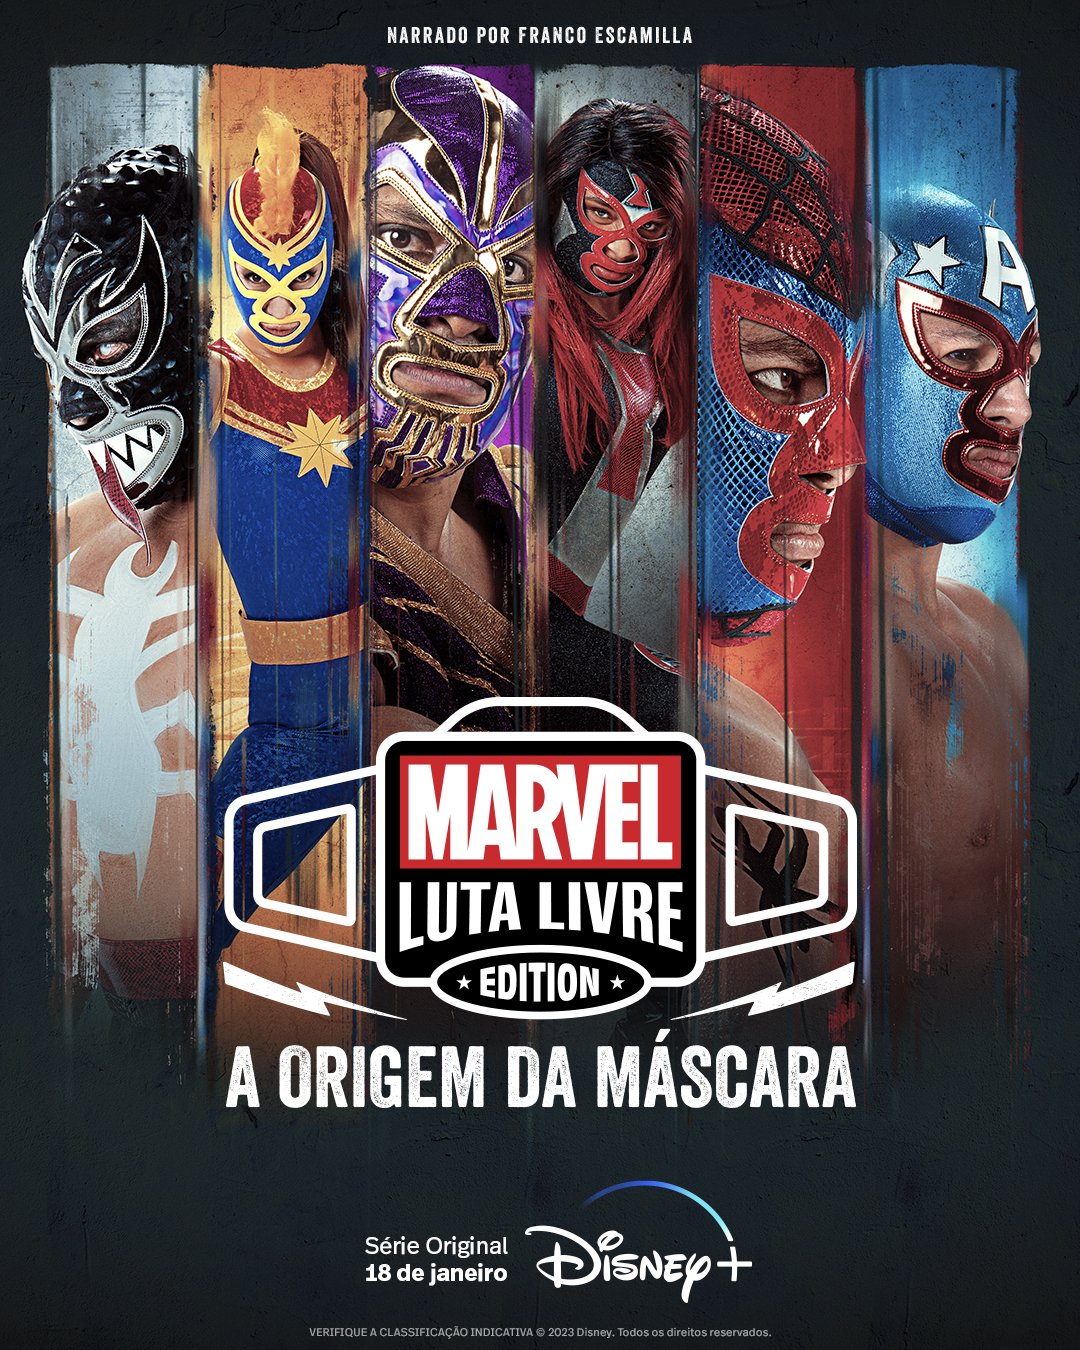 Marvel Luta Livre Edition: A Origem da Máscara — Nova série original  inusitada é anunciada para o Disney+